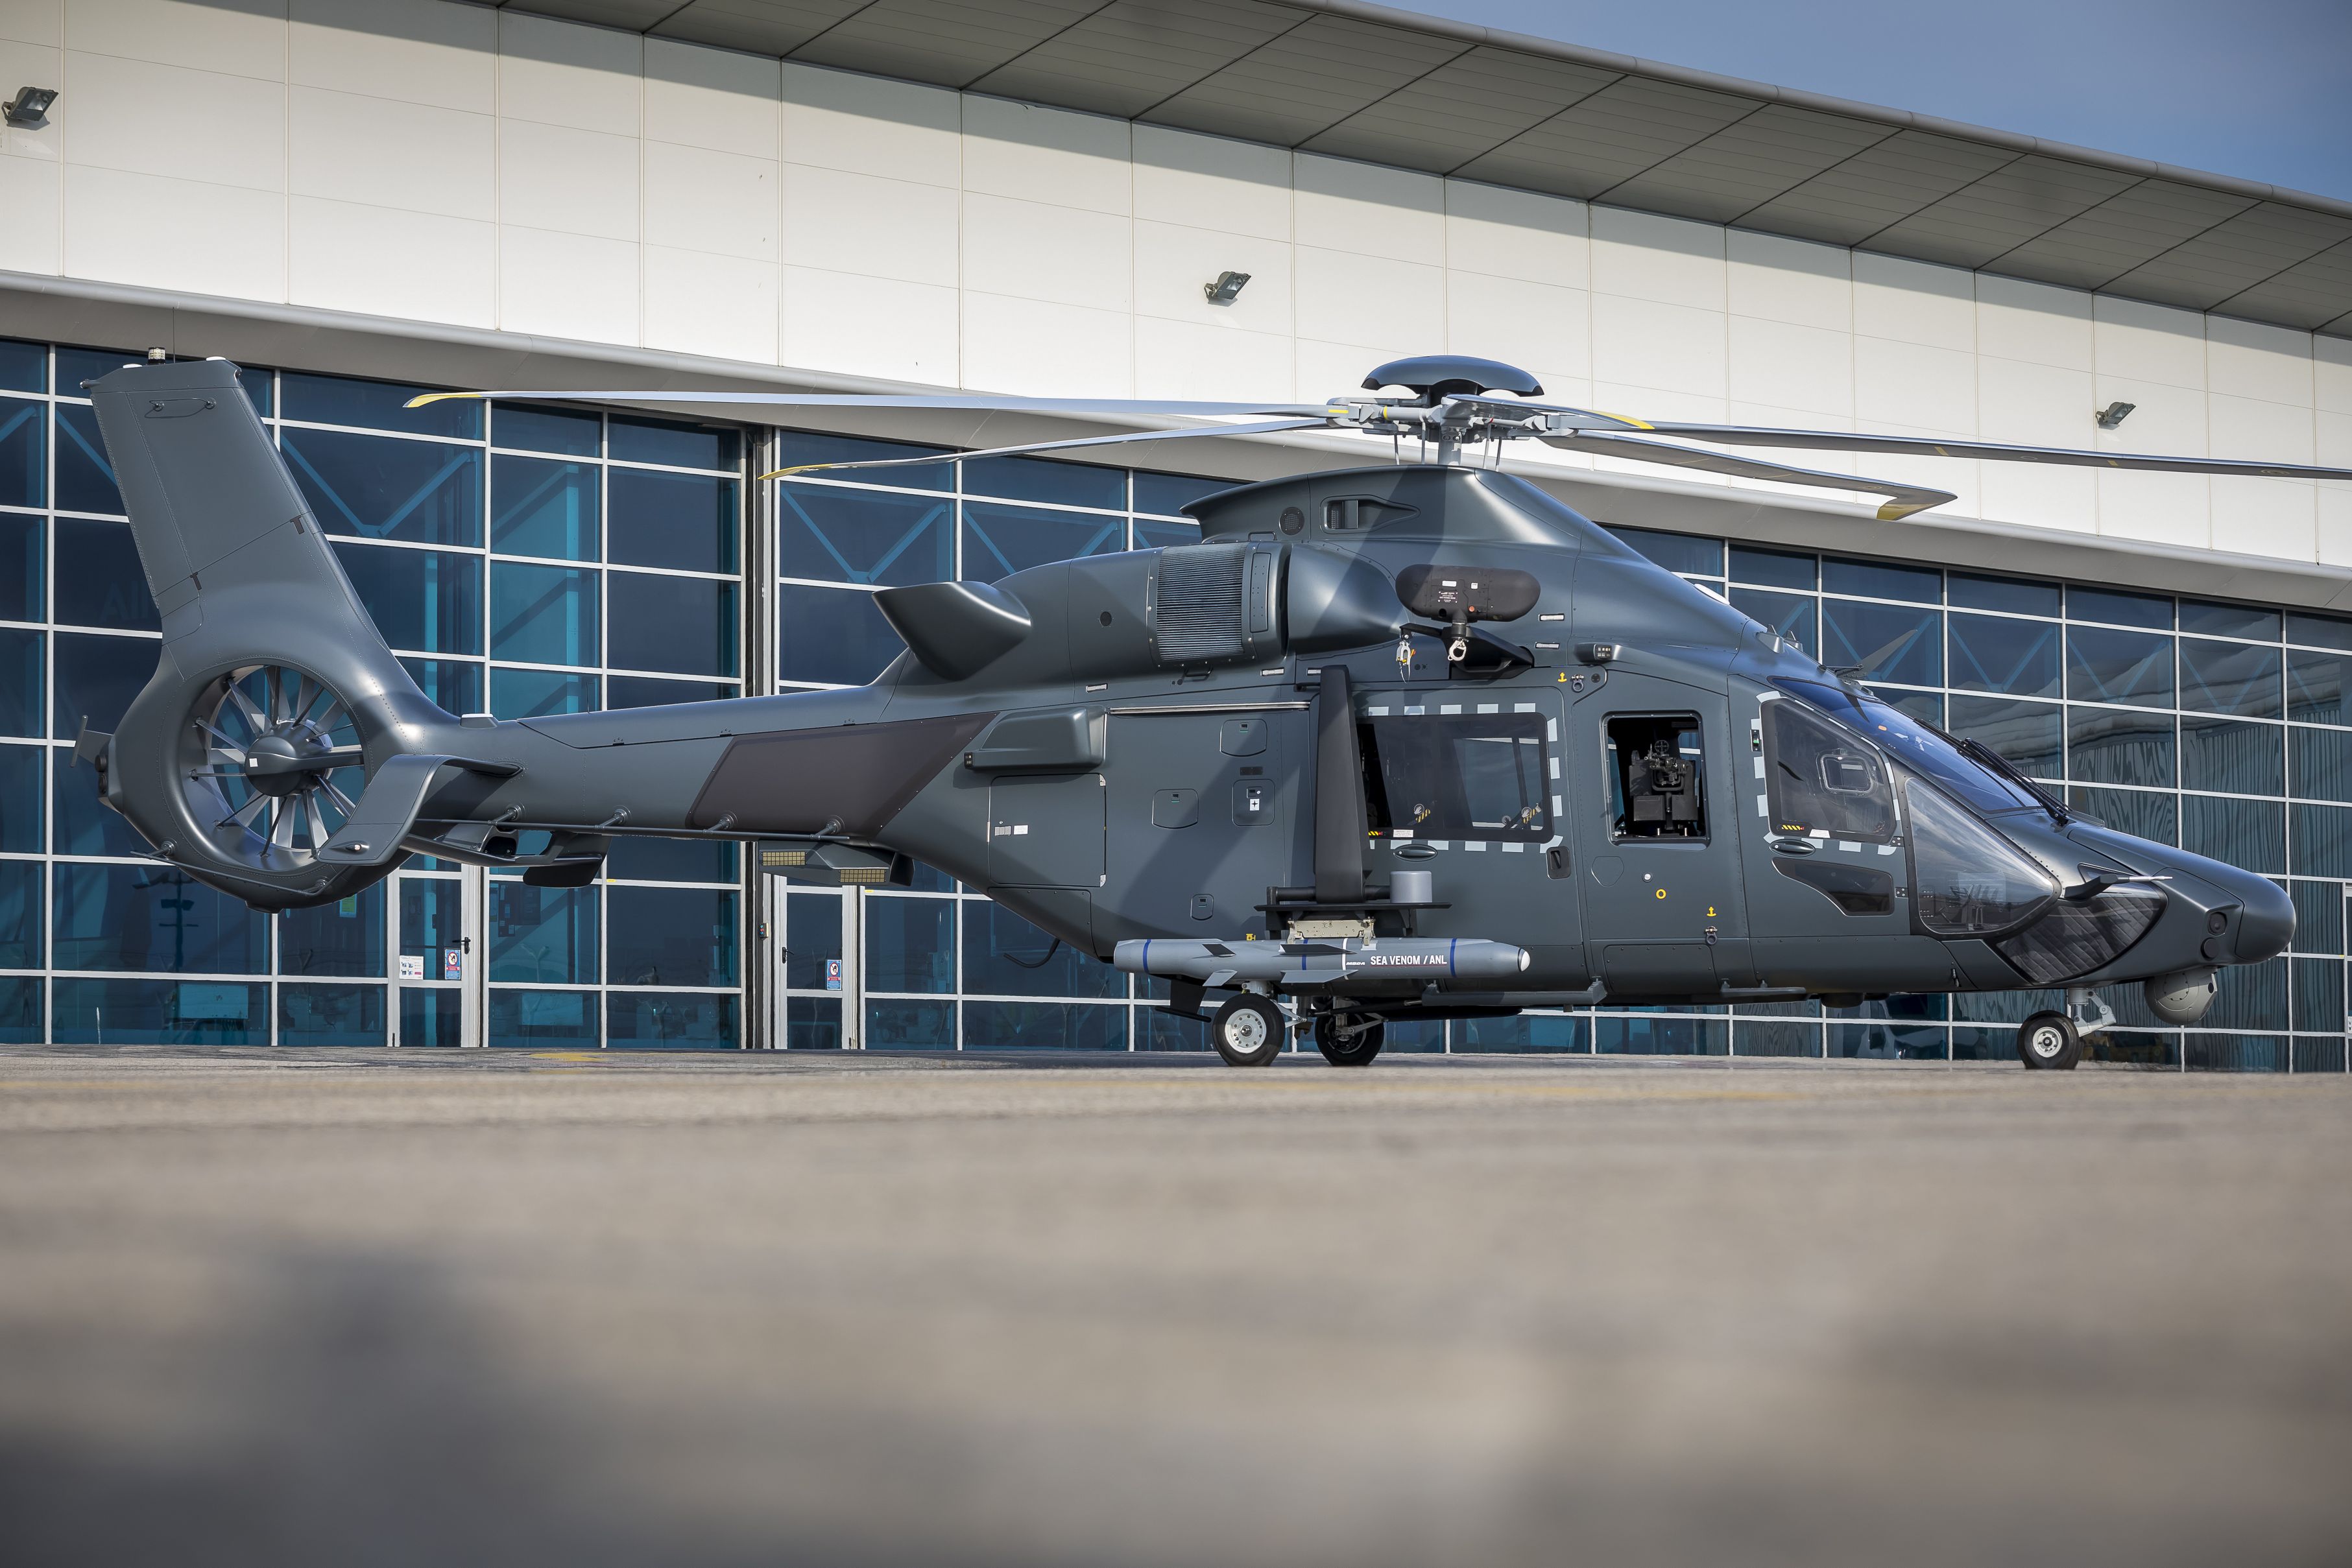 L’Hélicoptère interarmées léger, appelé Guépard, entrera finalement en service avec deux ans d’avance . Ab63423d96be3c1aad4eec2539f0486c33b4f49416c48d3b6d9ee60338d32f9b